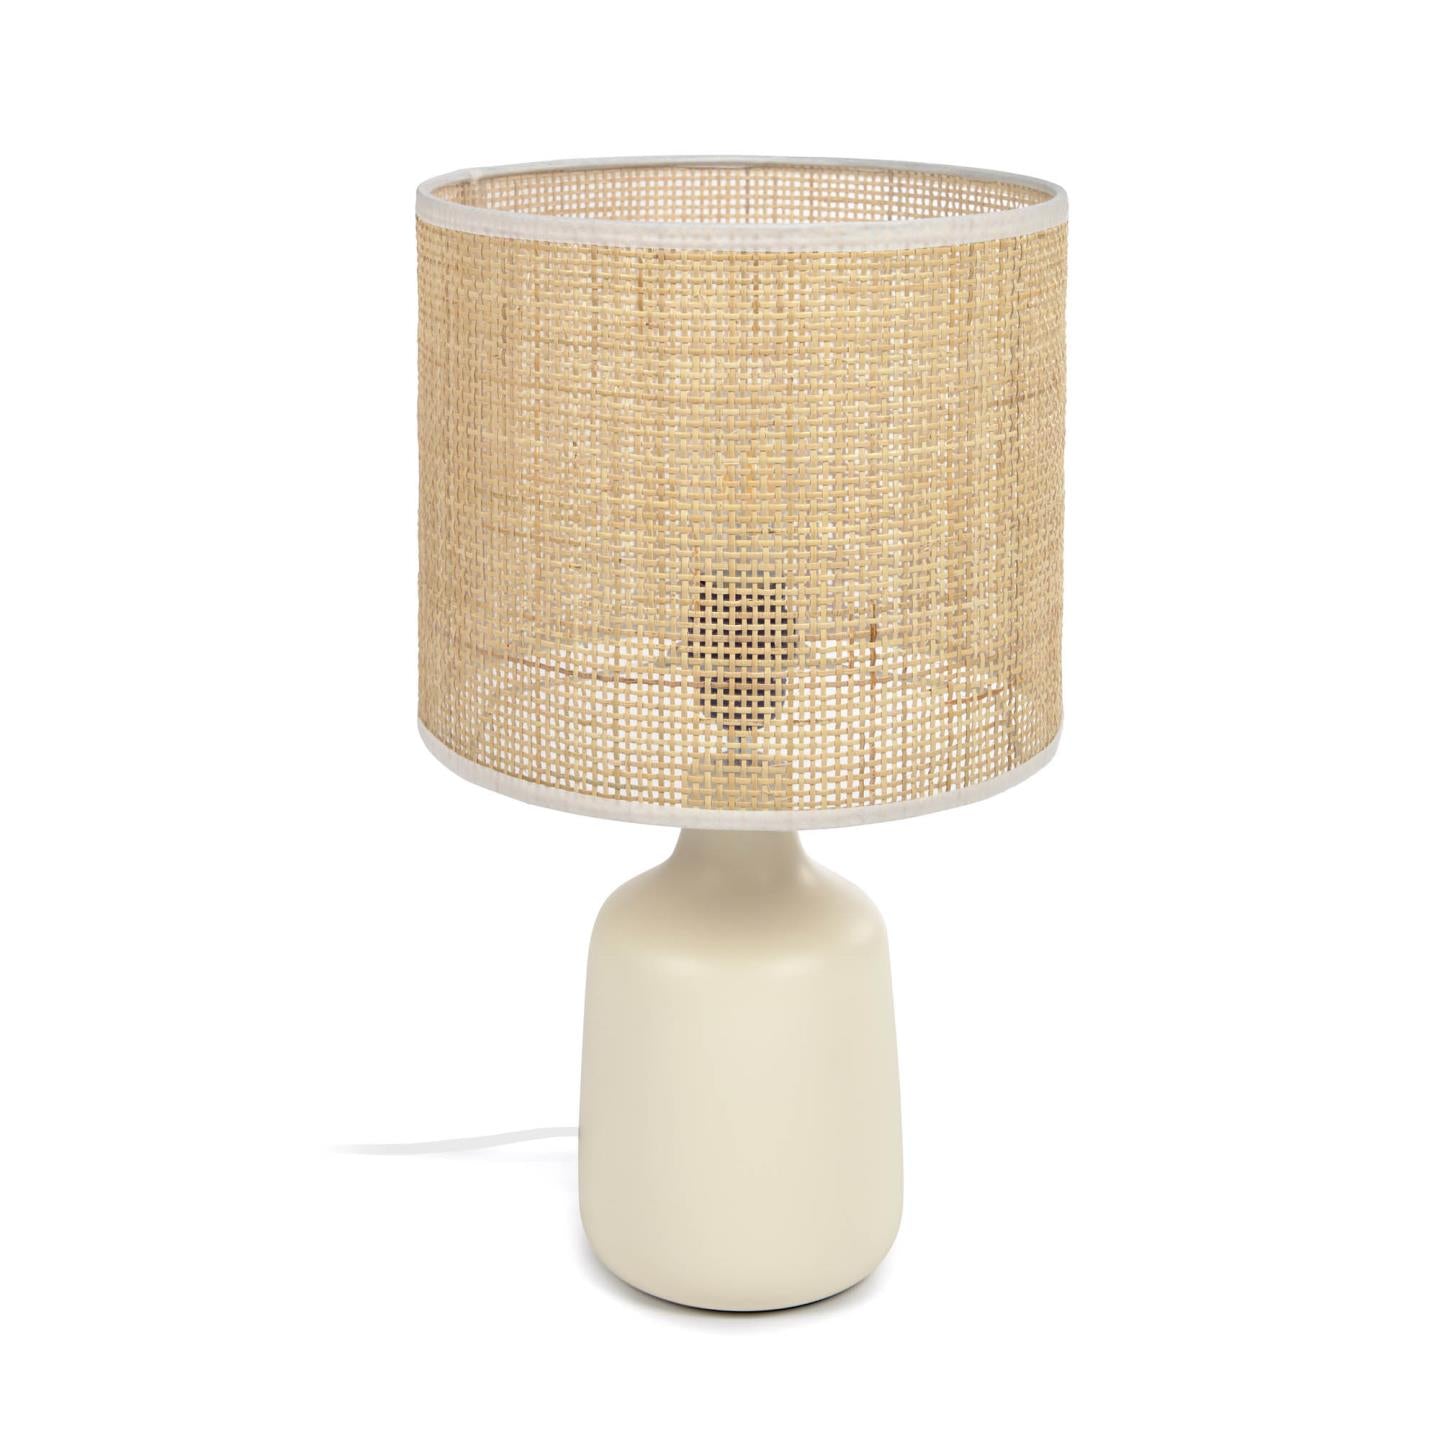 Erna asztali lámpa fehér kerámiából és bambuszból, natúr kivitelben